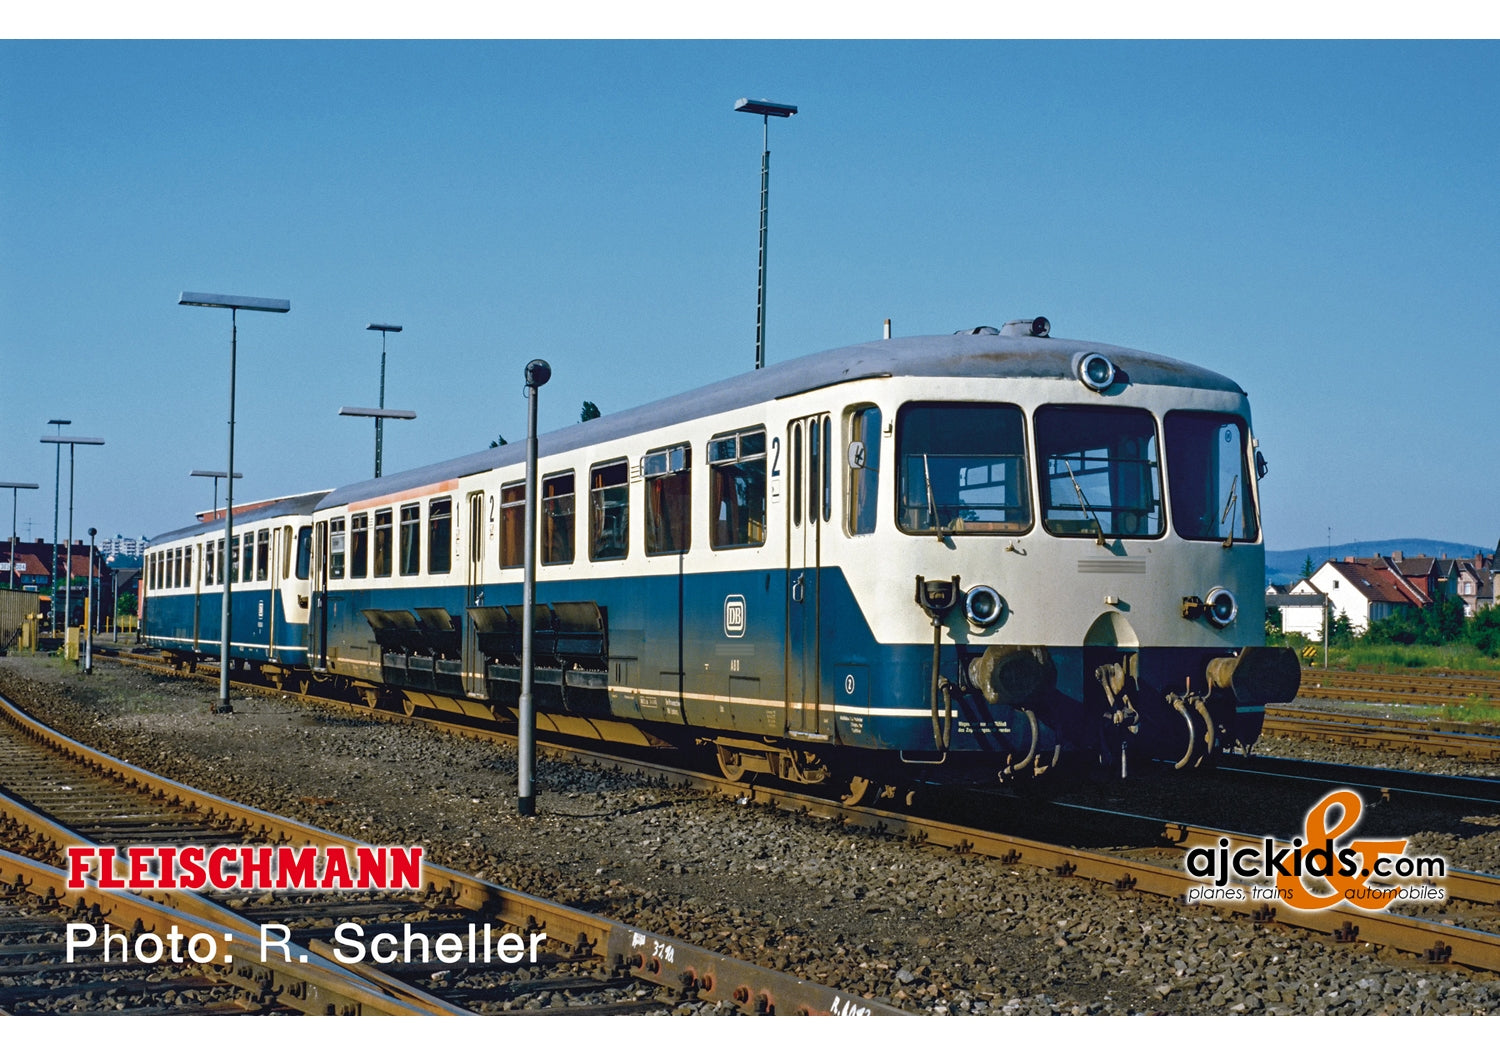 Fleischmann 740101 - Accumulator rail car class 515 with control cab coach